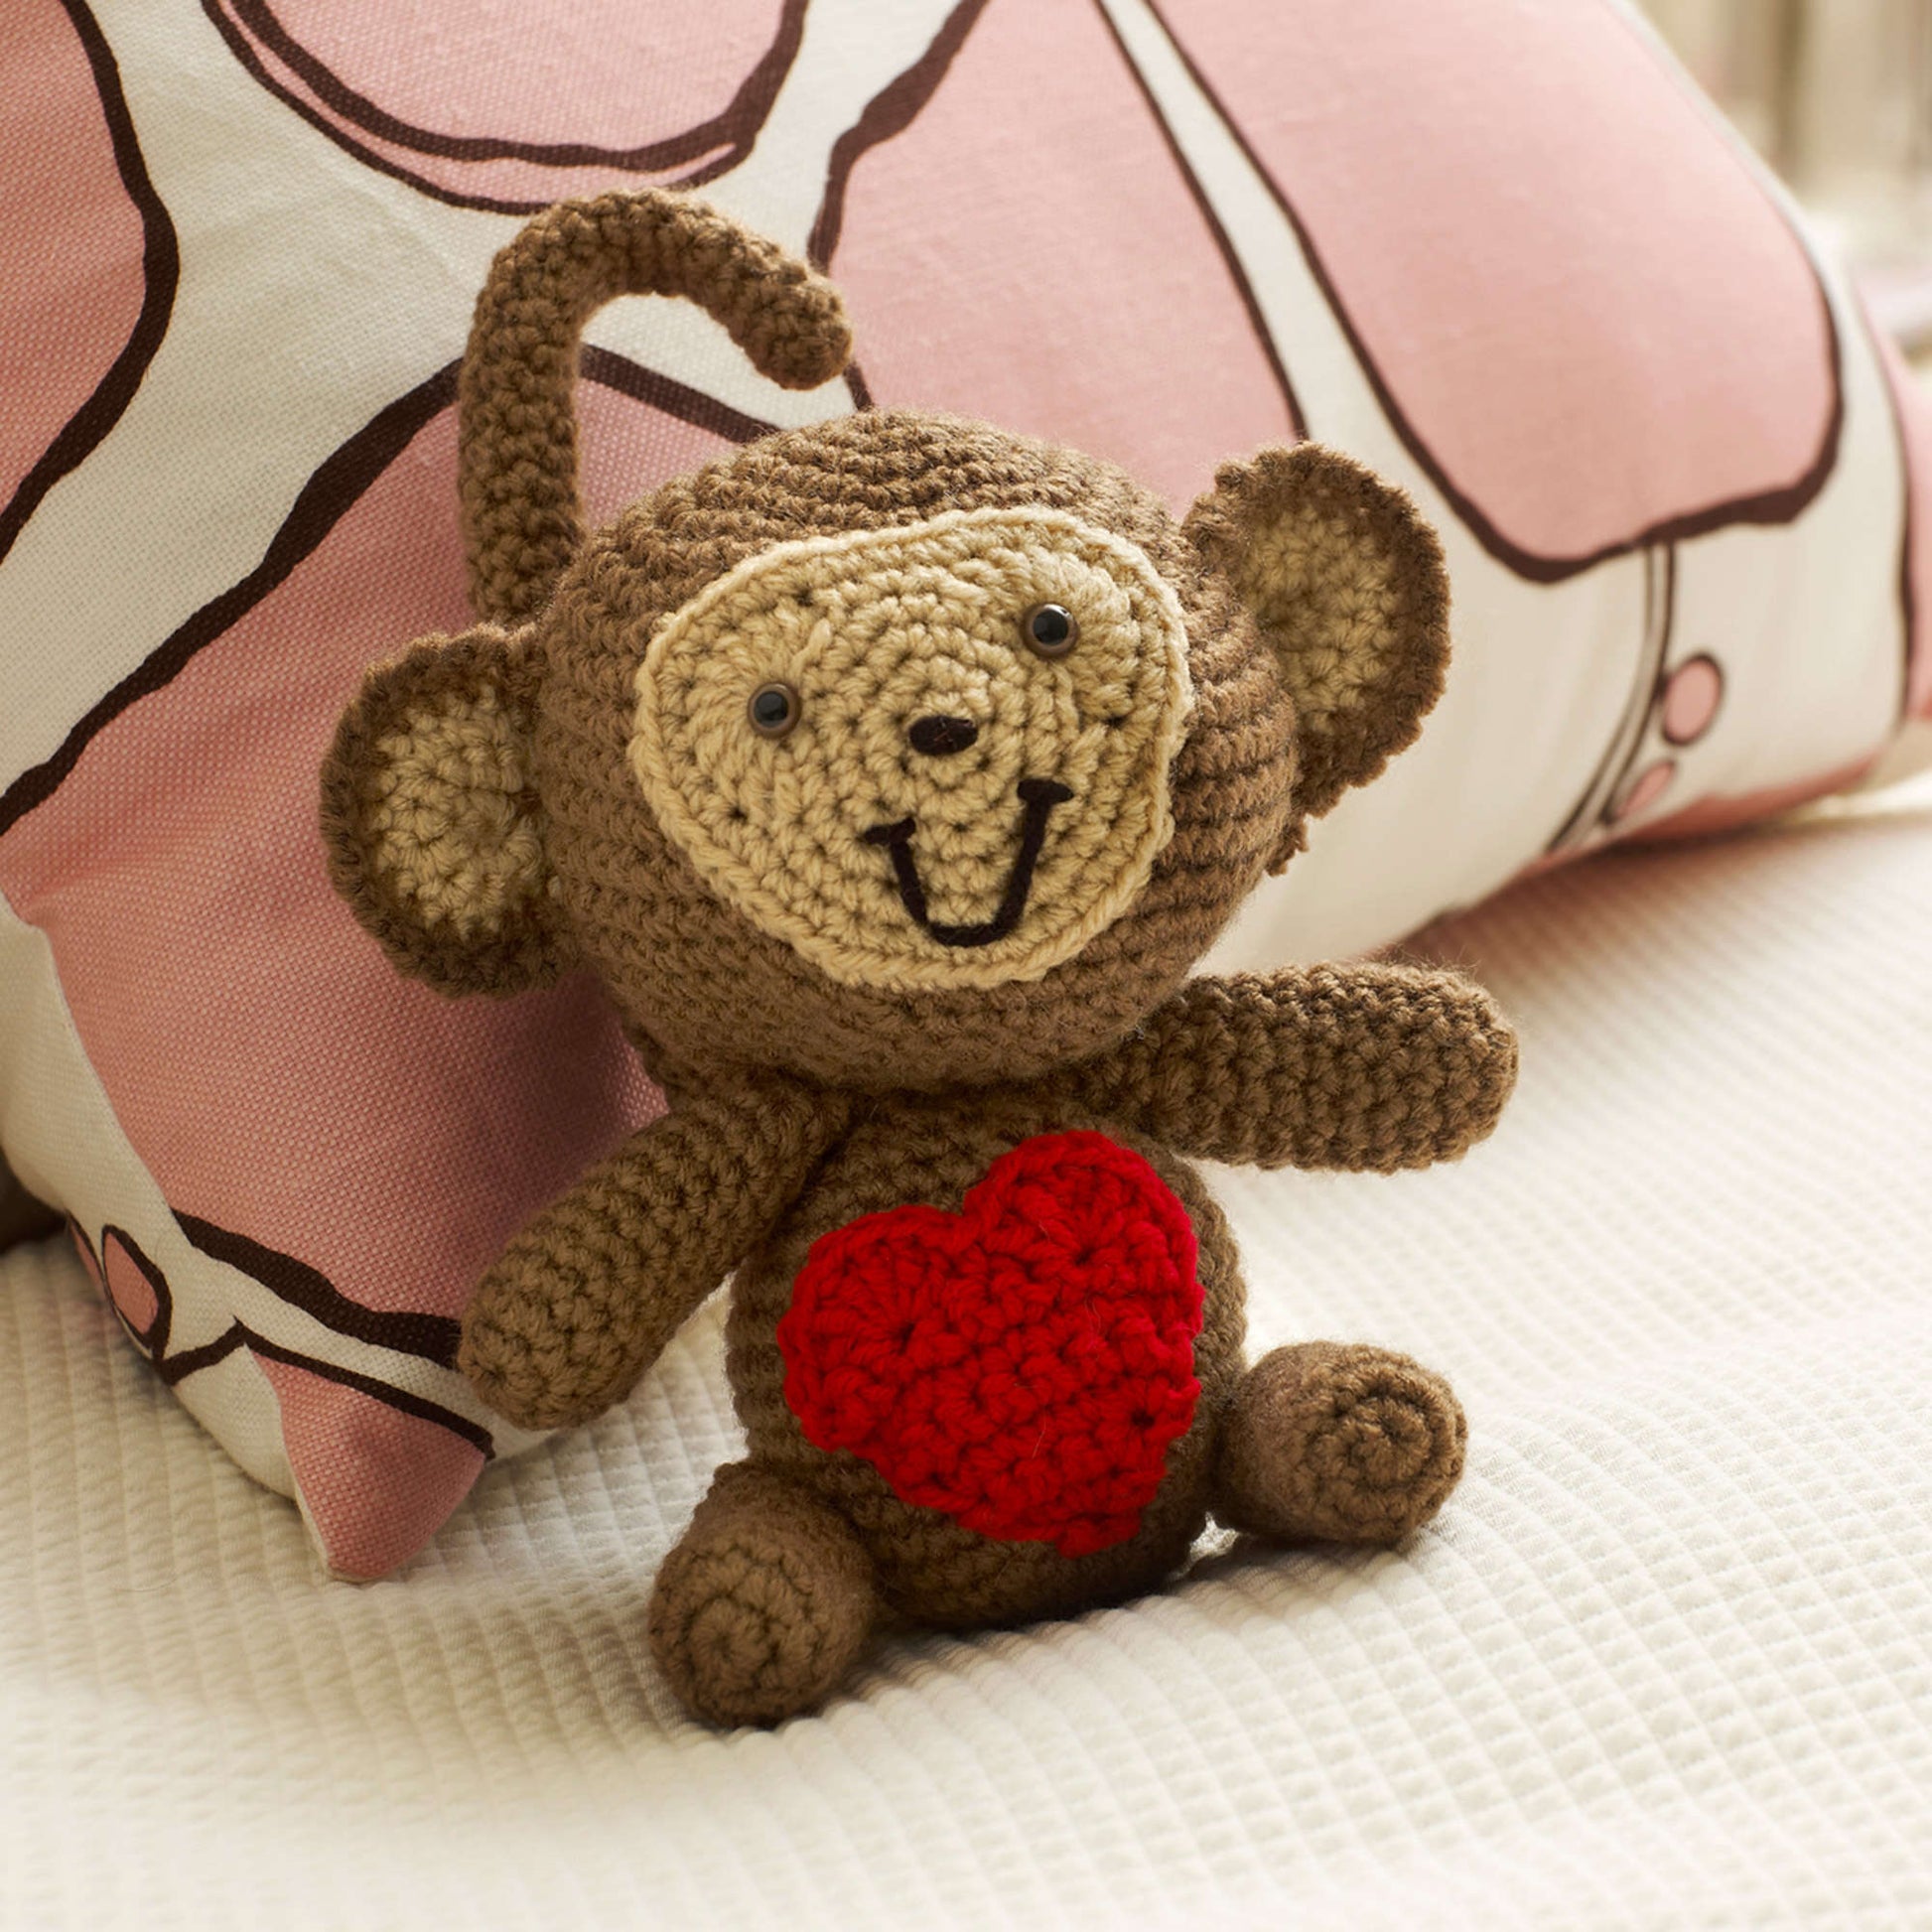 Free Red Heart Love Monkey Pattern